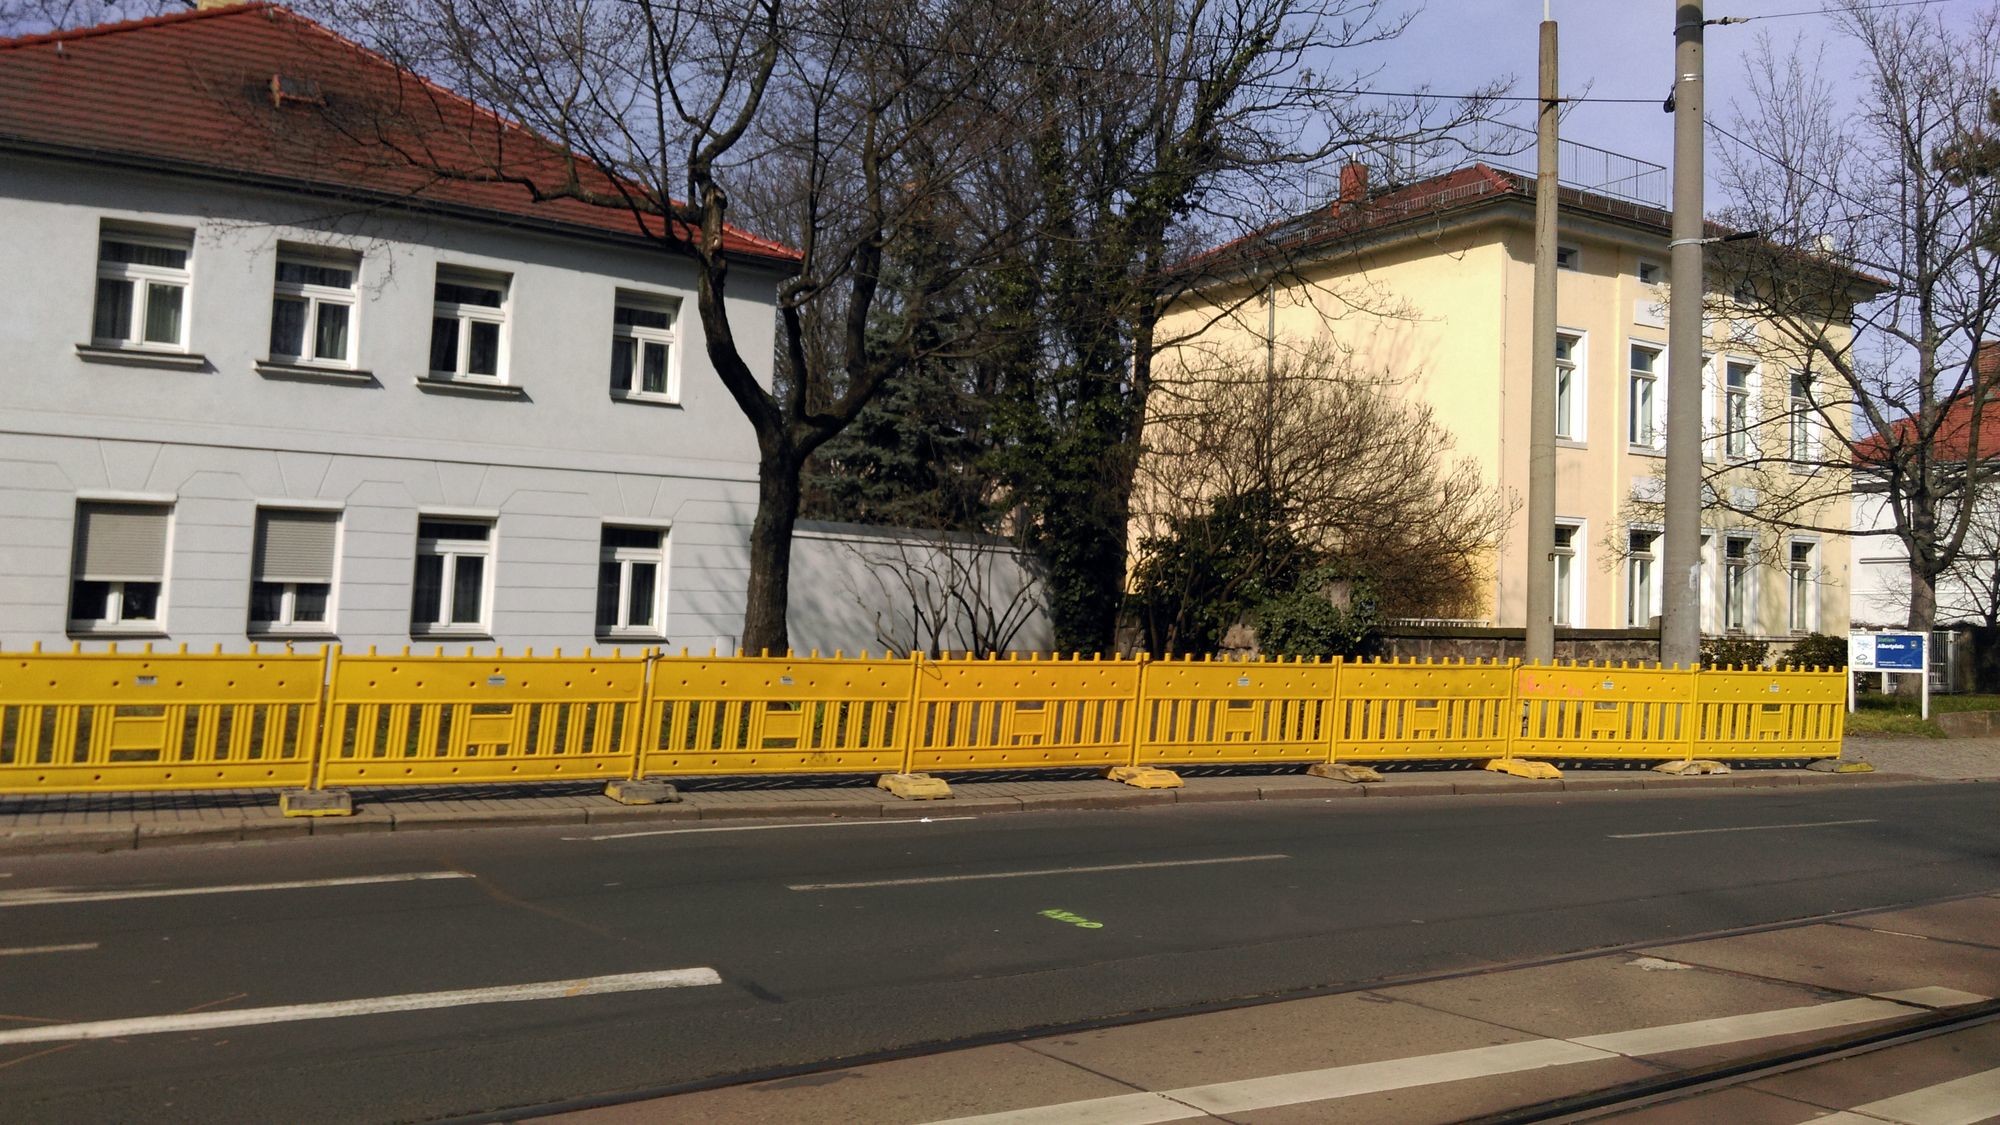 Umleitung-Koenigsbruecker-Strasse: Der Baustellen-Zaun an der Königsbrücker Straße